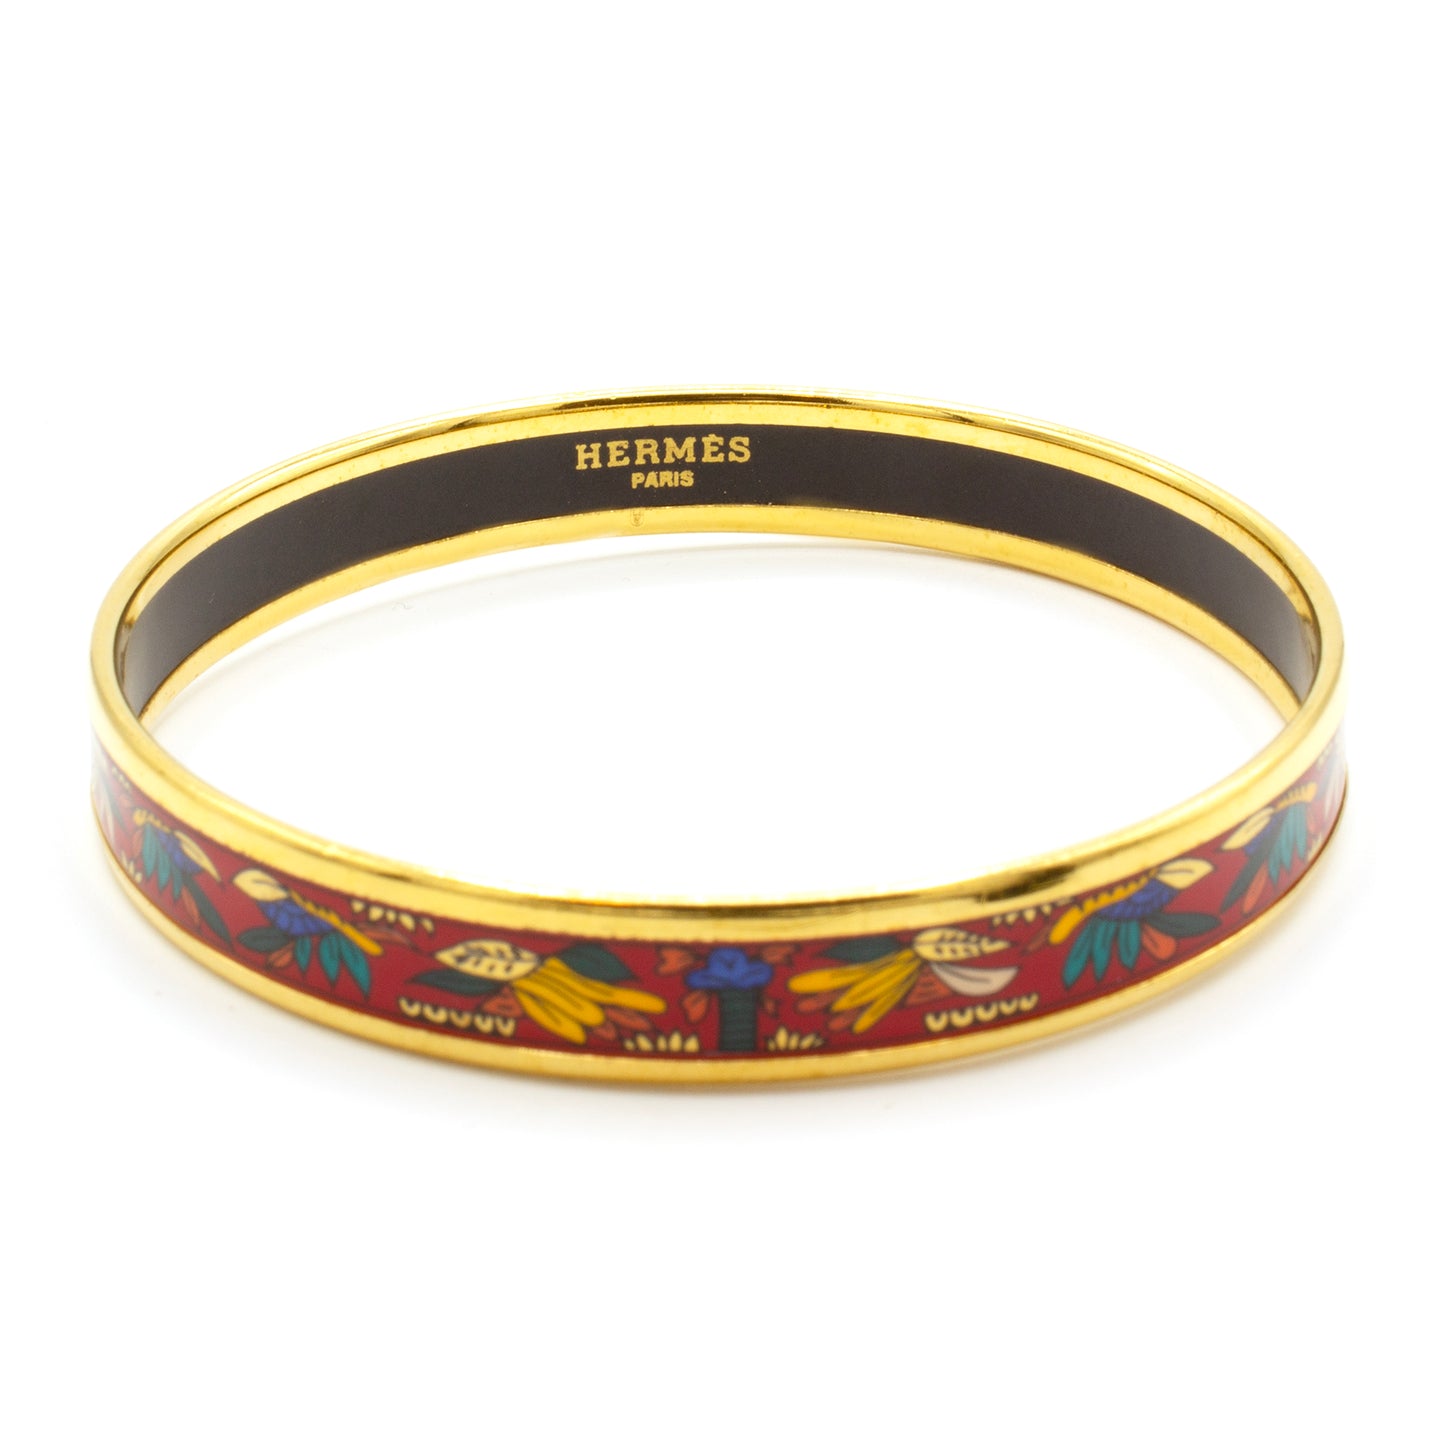 Hermès Enamel bracelet